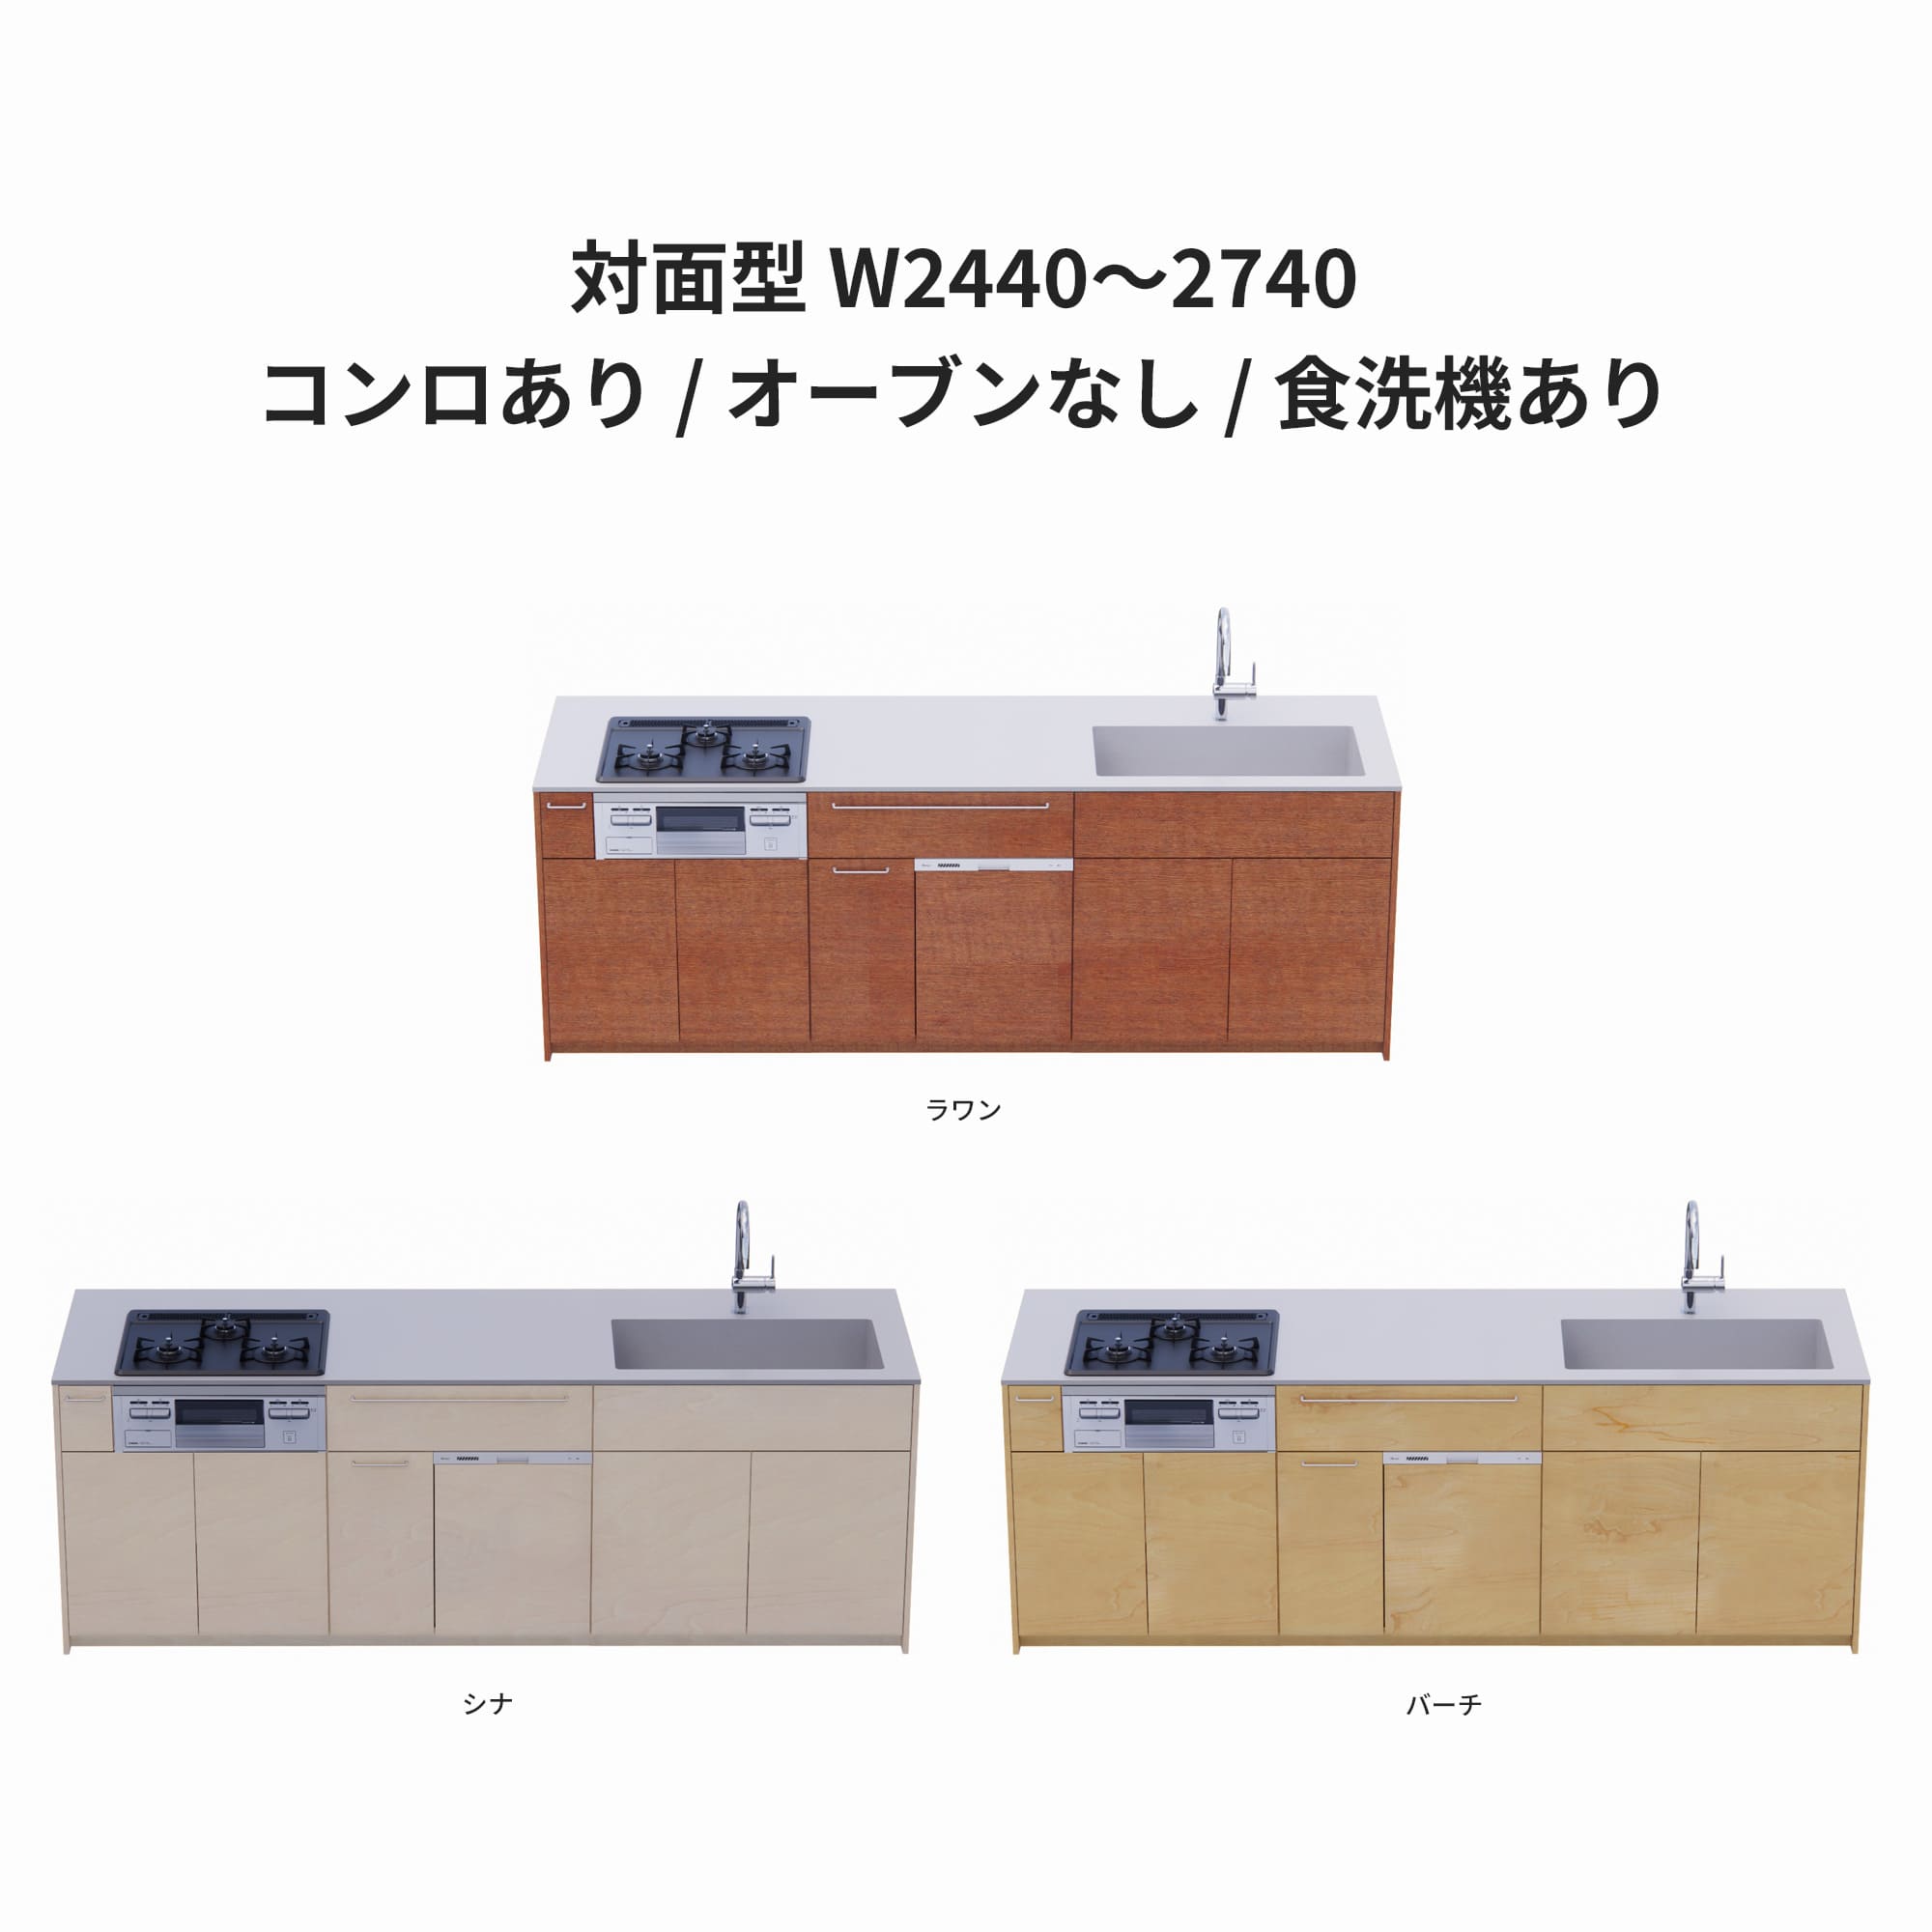 木製システムキッチン 対面型 W2440～2740・コンロあり / オーブンなし / 食洗機あり KB-KC022-44-G183 ラワン・シナ・バーチが選択できます